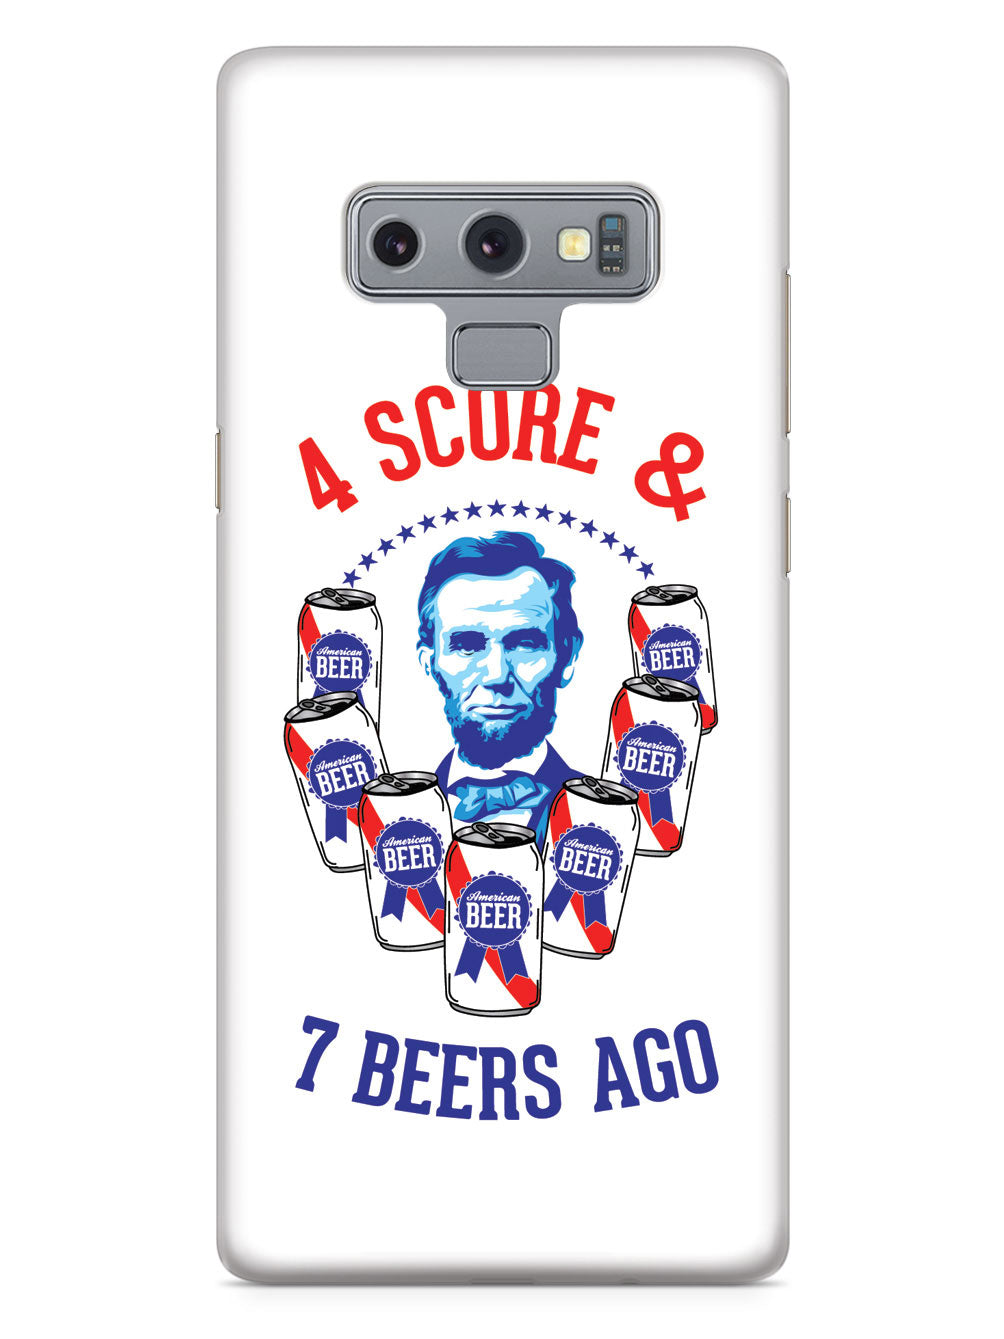 Four Score & 7 Beers Ago - Patriotic Case